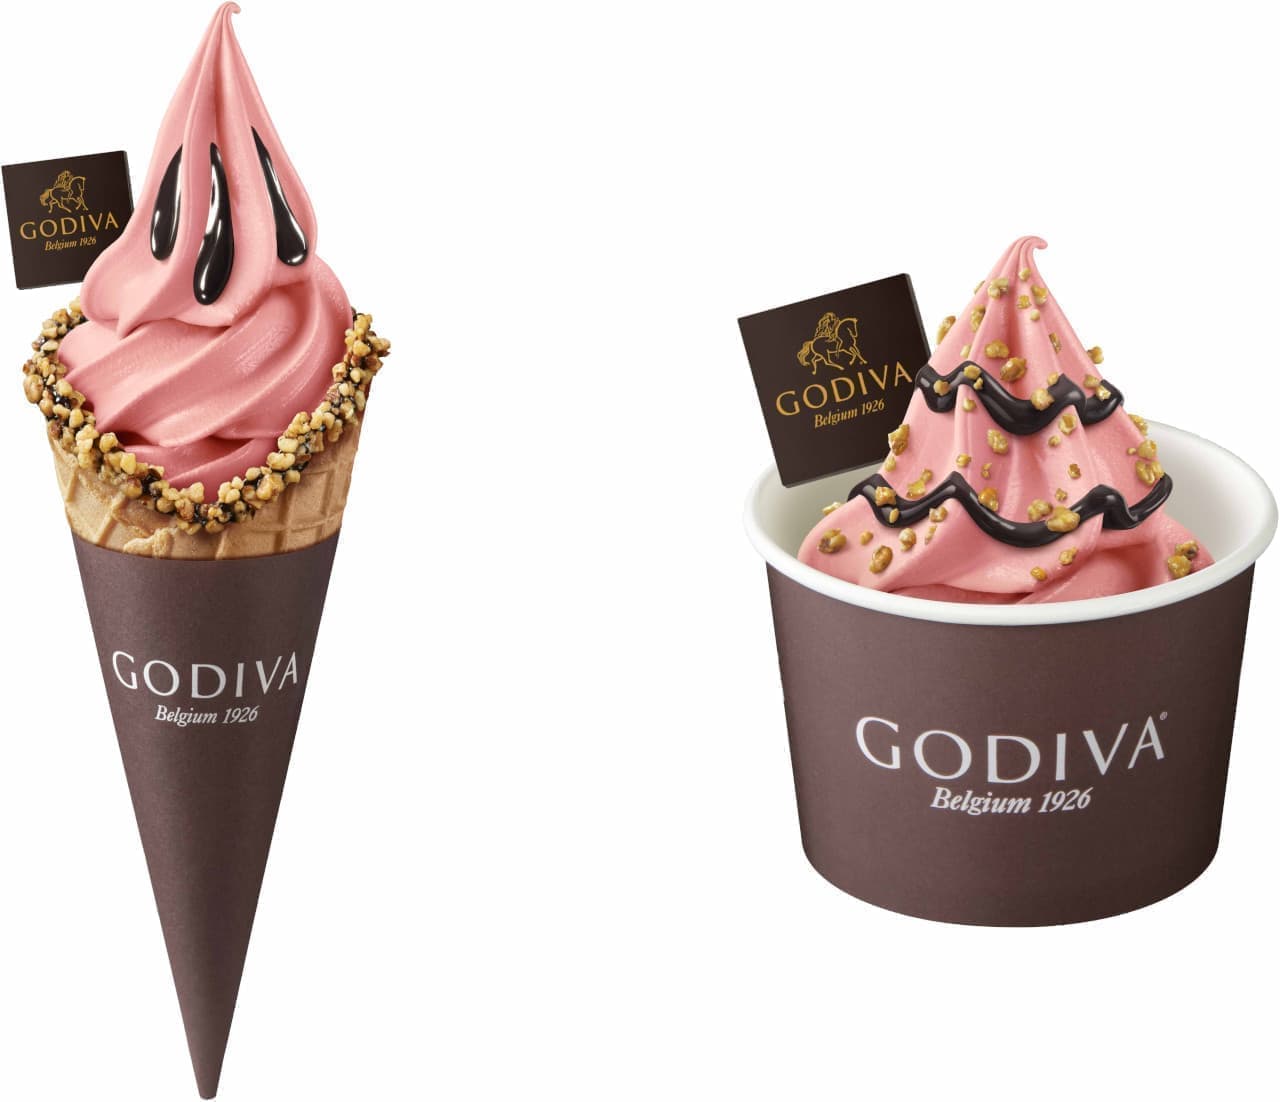 Godiva "Godiva Soft Cream Strawberry".